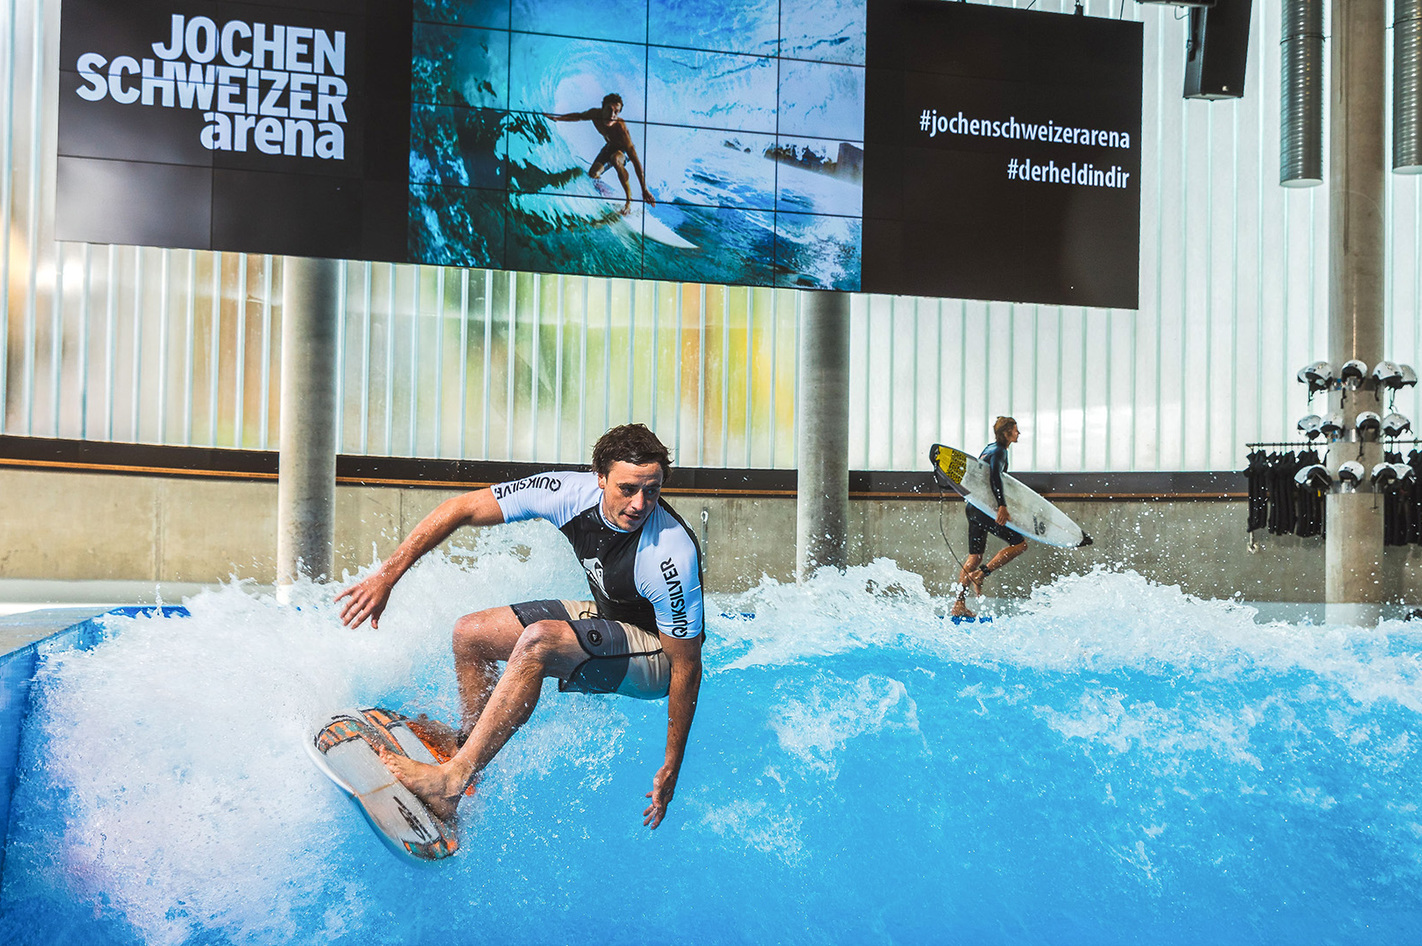 Indoor Surfkurs Advanced Jochen Schweizer Arena in Taufkirchen bei München